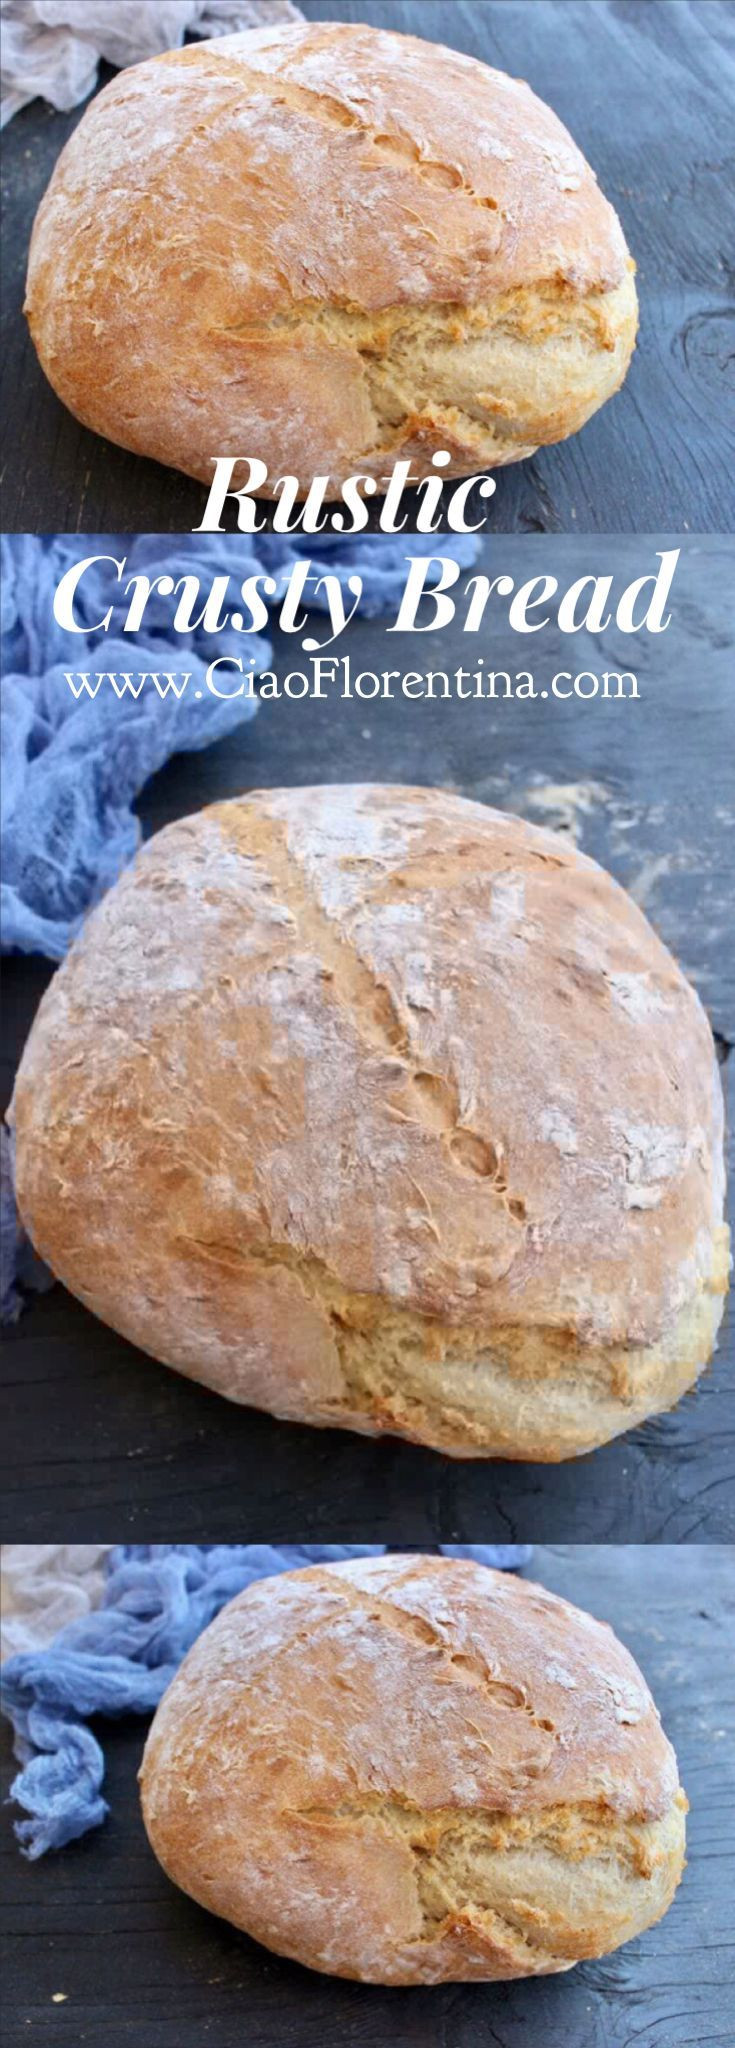 Crusty Italian Bread Recipe
 Rustic Crusty Bread Recipe Bread Recipes GALORE